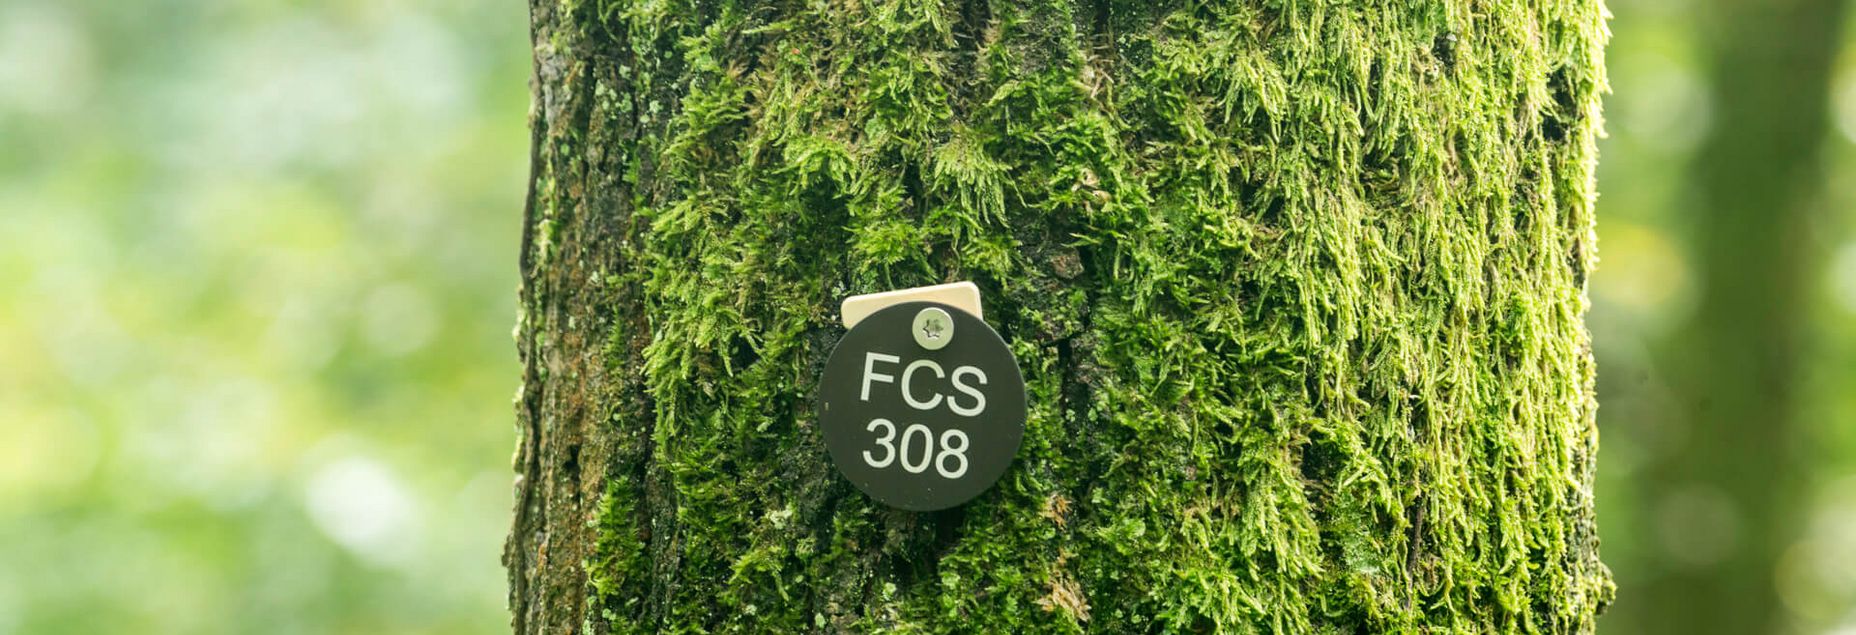 FCS 308 - Plakette